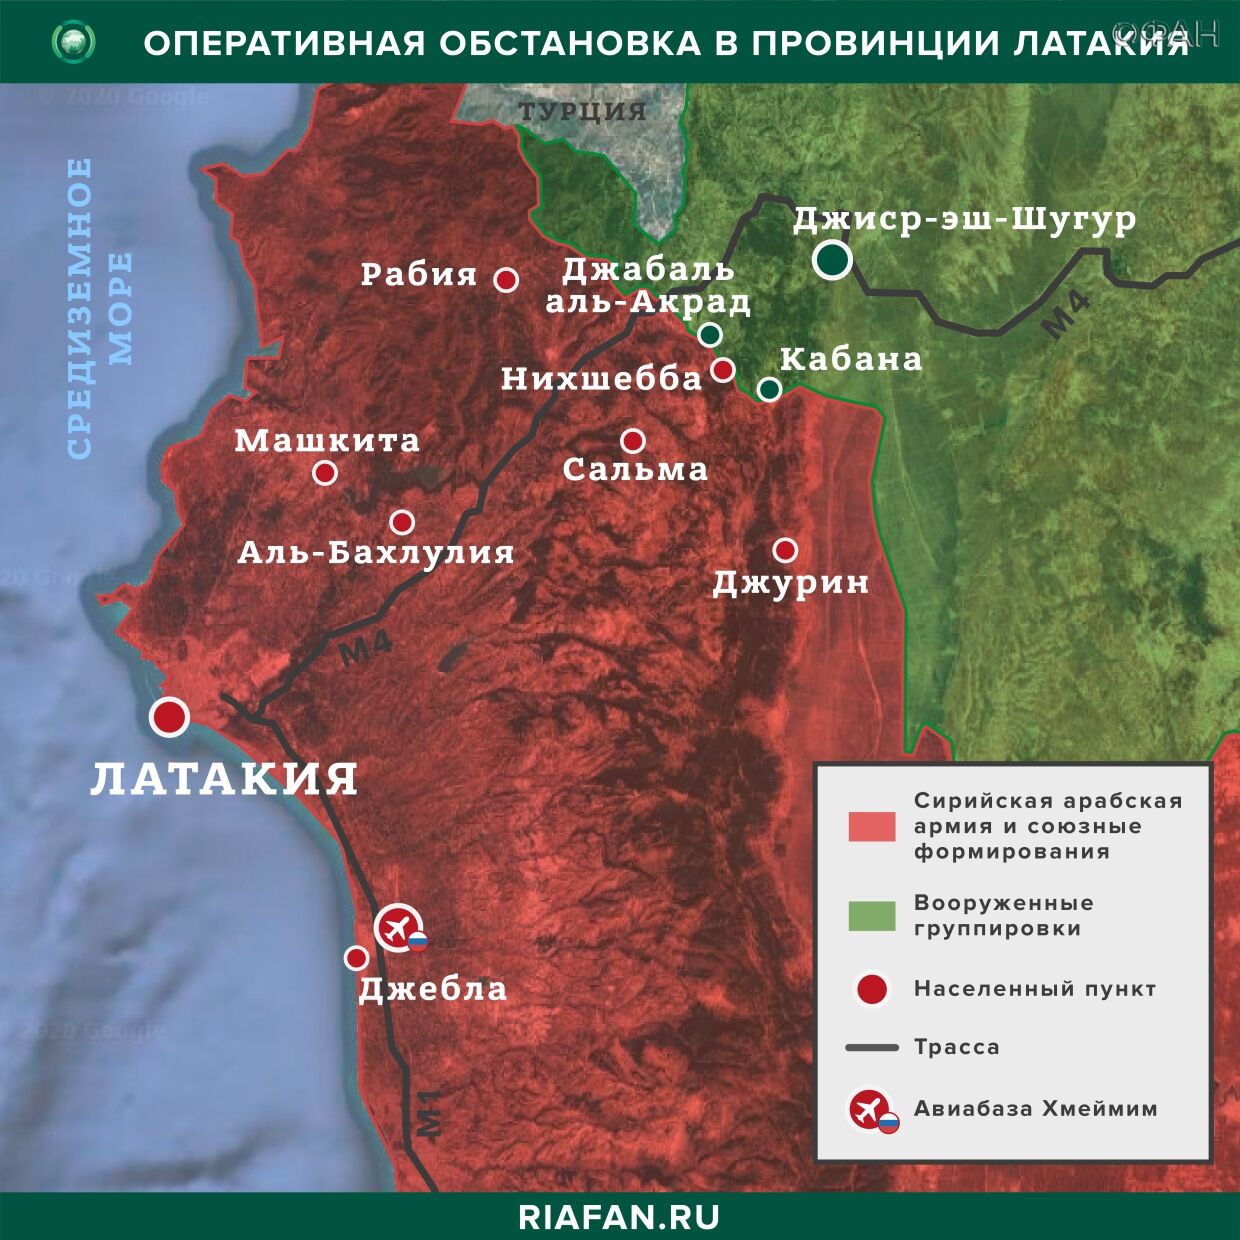 Nouvelles de Syrie 5 Juin 12.30: сирийские ПВО перехватили часть ракет Израиля в Хаме, РФ передала новую партию МиГ-29 Сирии